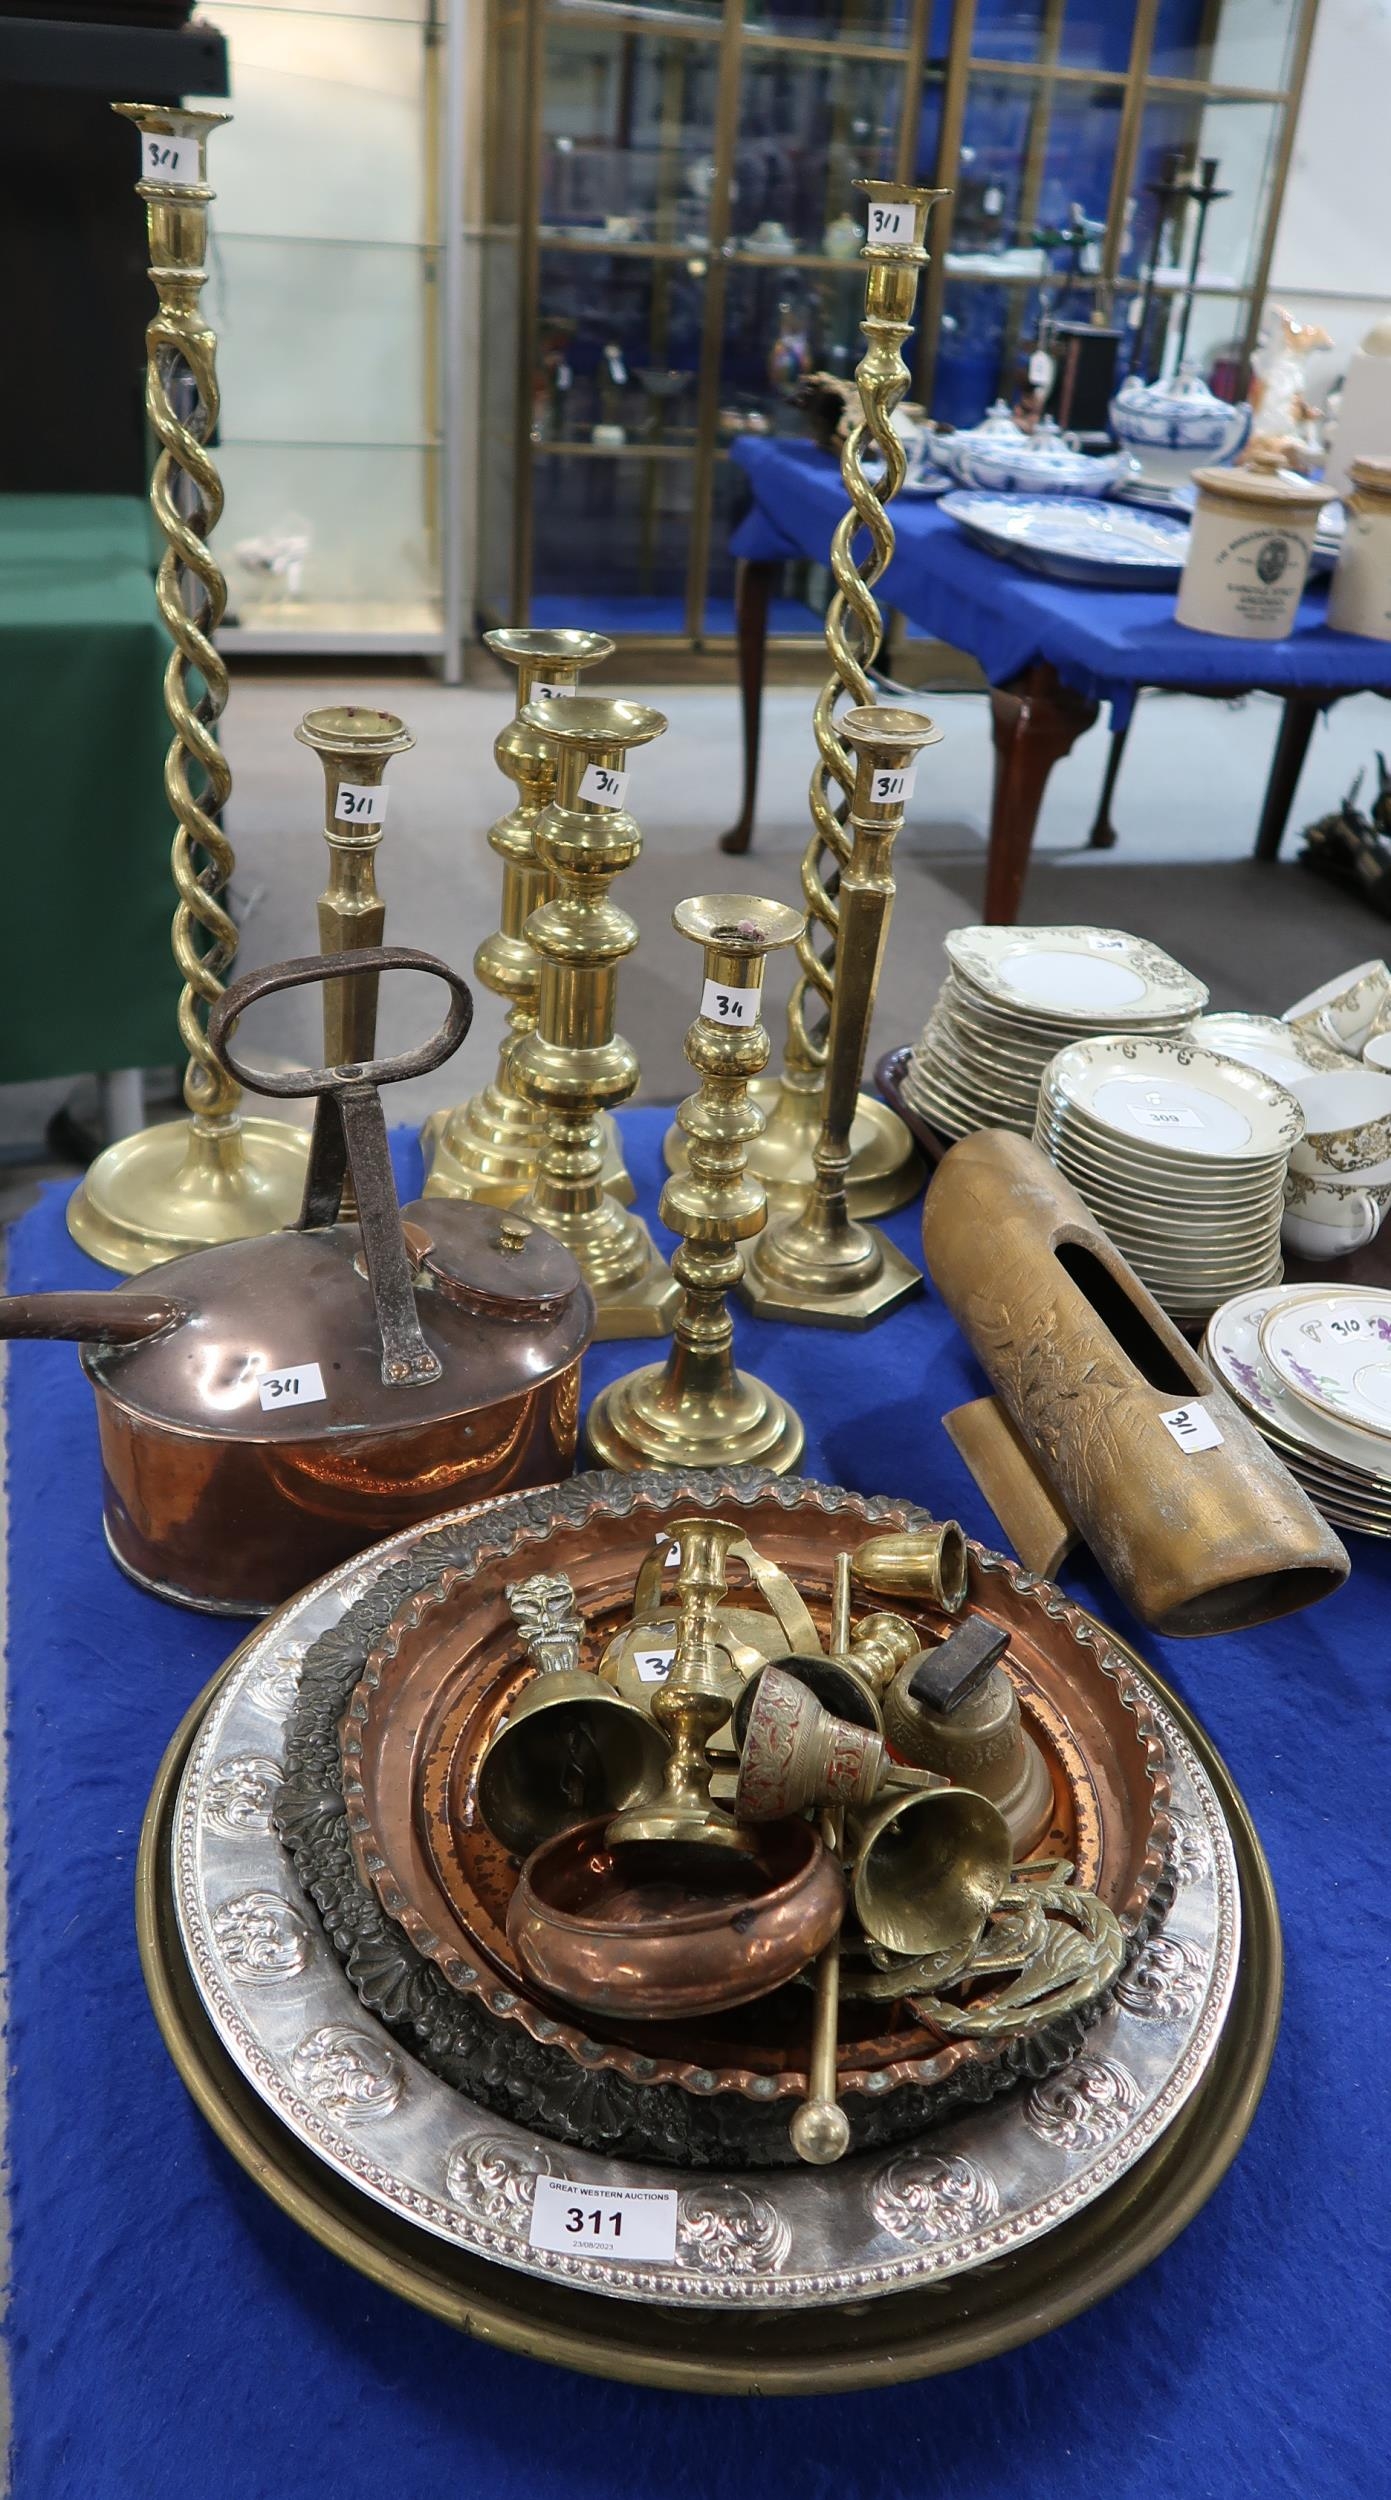 A pair of tall brass barley twist candlesticks, other candlesticks